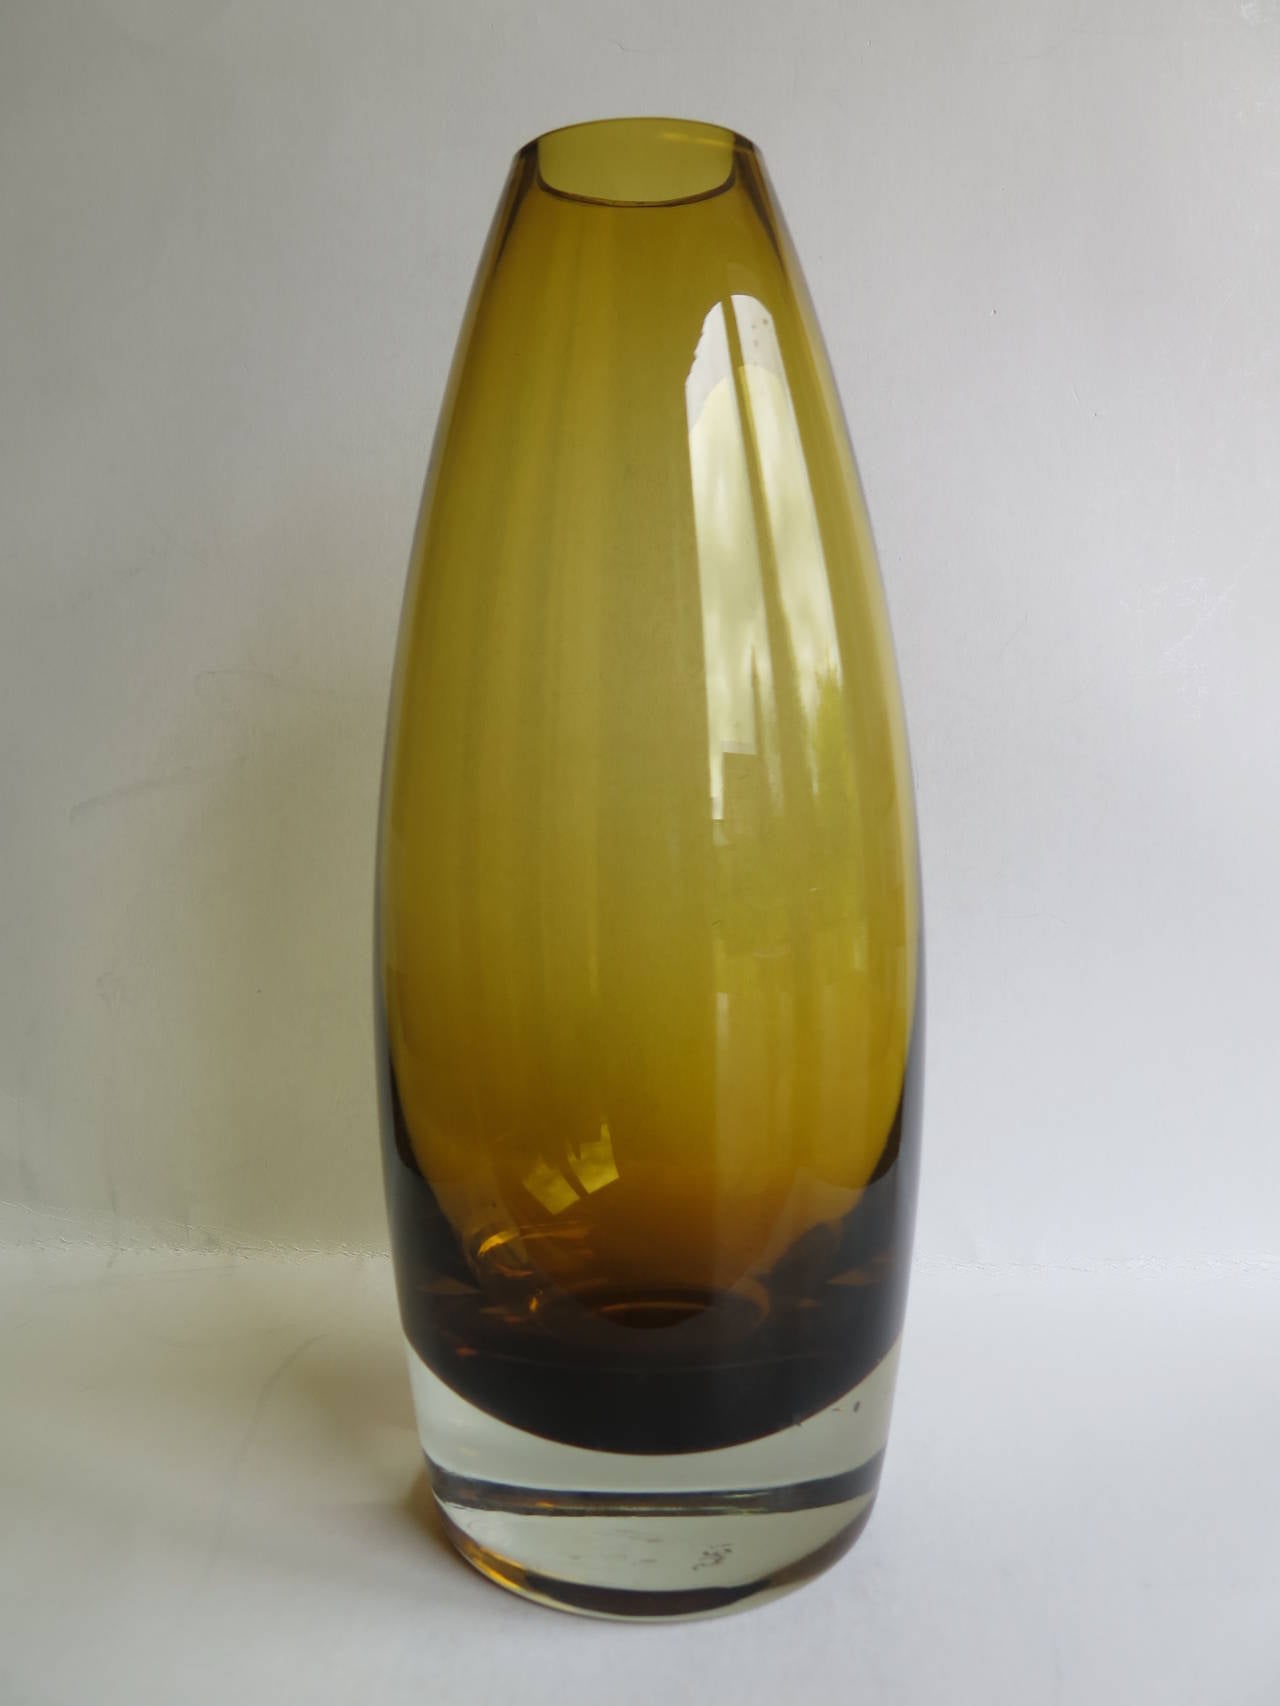 Il s'agit d'un vase en verre d'art scandinave moderne du milieu du siècle dernier, attribué à la designer Tamara Aladin, pour le fabricant Riihimaen / Riihimaki Lasi Oy de Finlande.

Le vase a une belle forme cylindrique effilée dans une couleur de